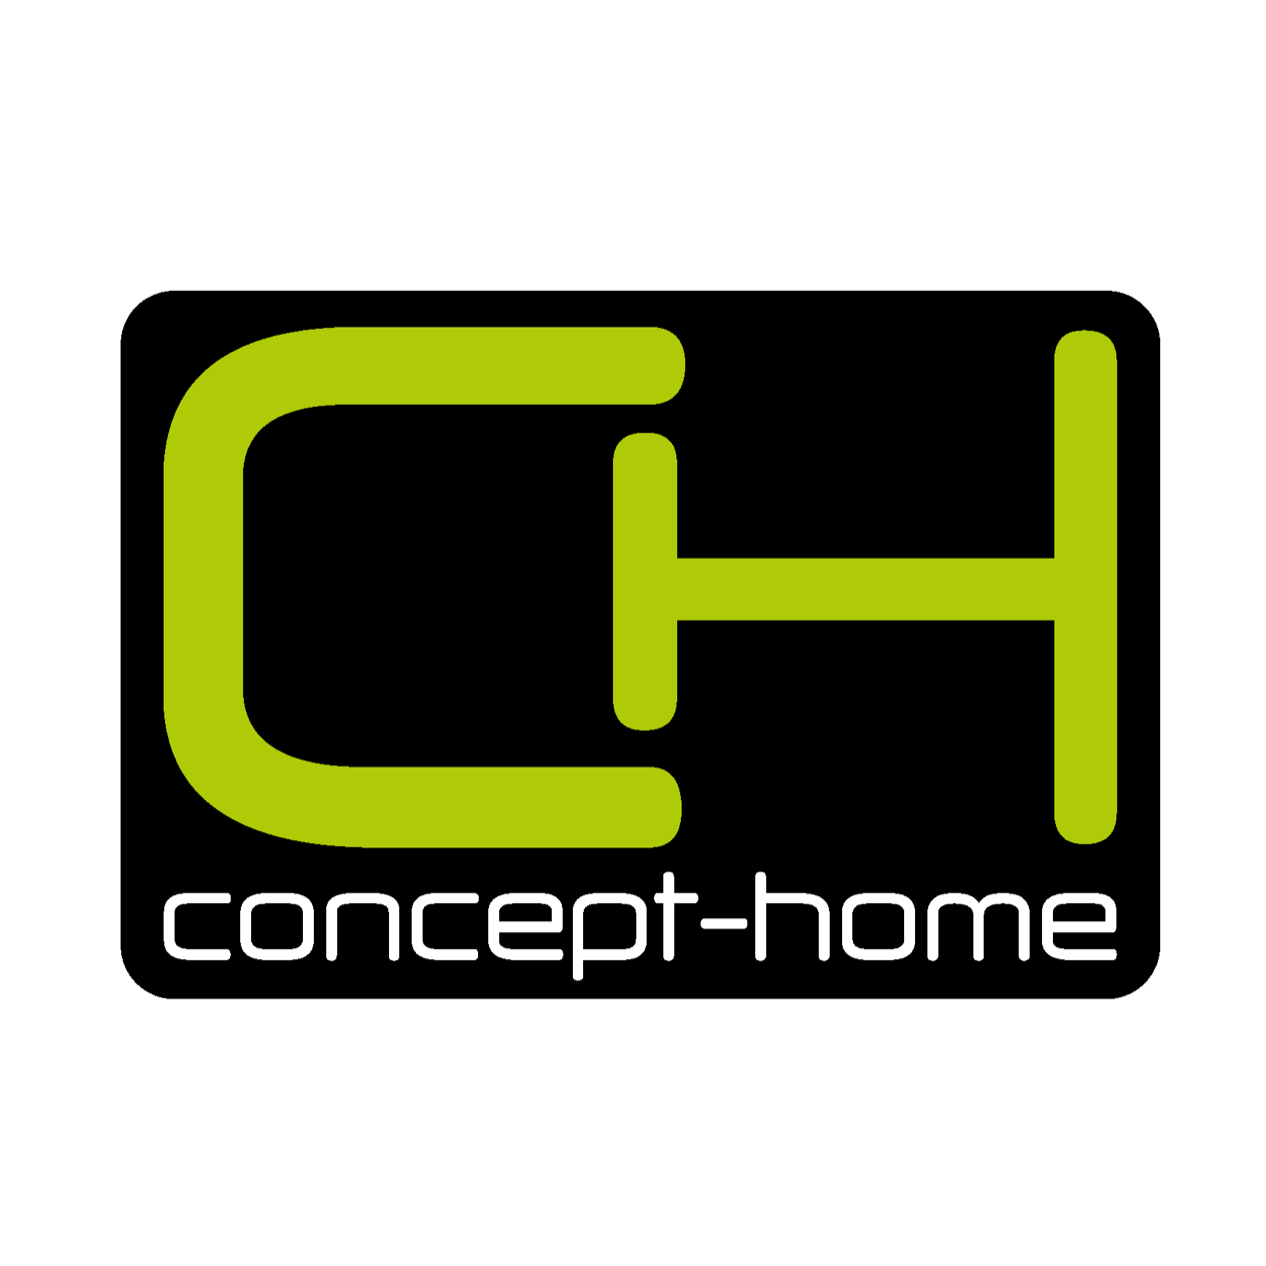 Concept-home